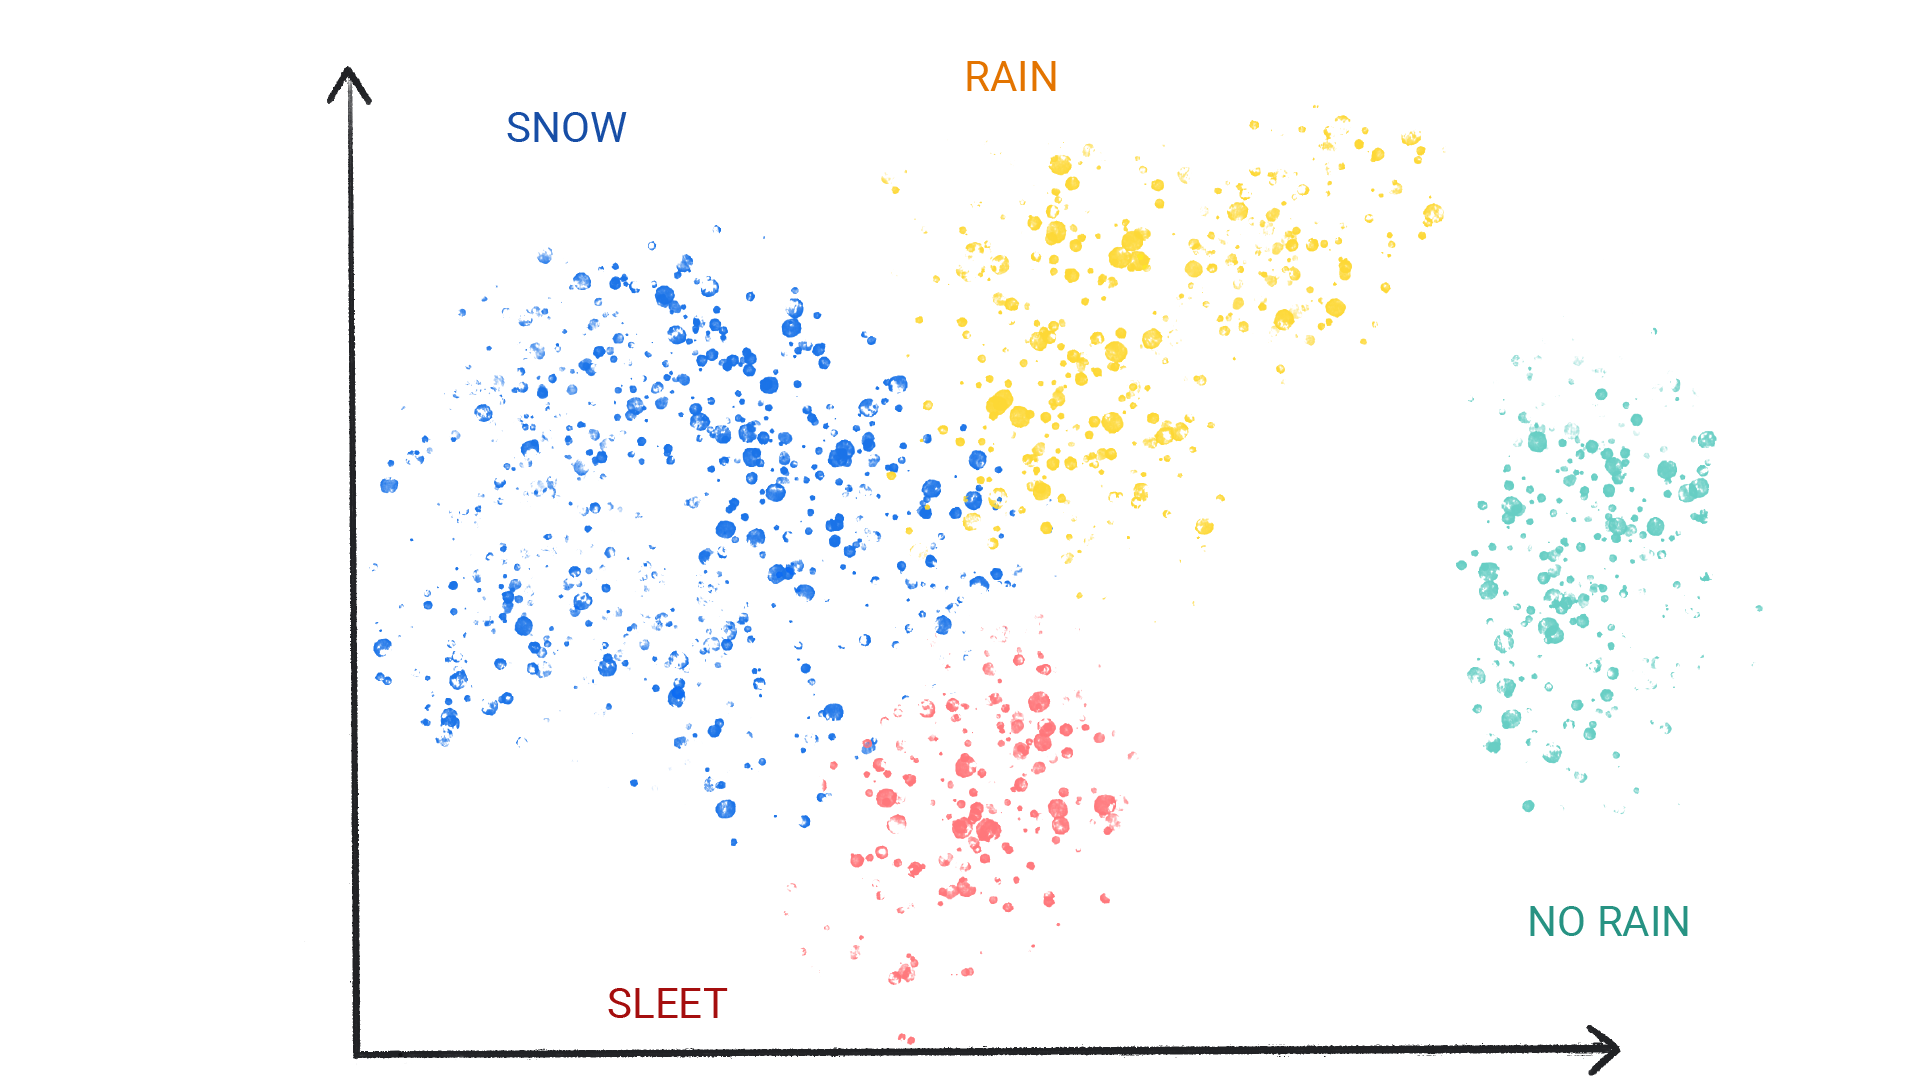 눈, 비, 우박, 비 오지 않음으로 라벨이 지정된 클러스터의 색상 점을 보여주는 이미지입니다.